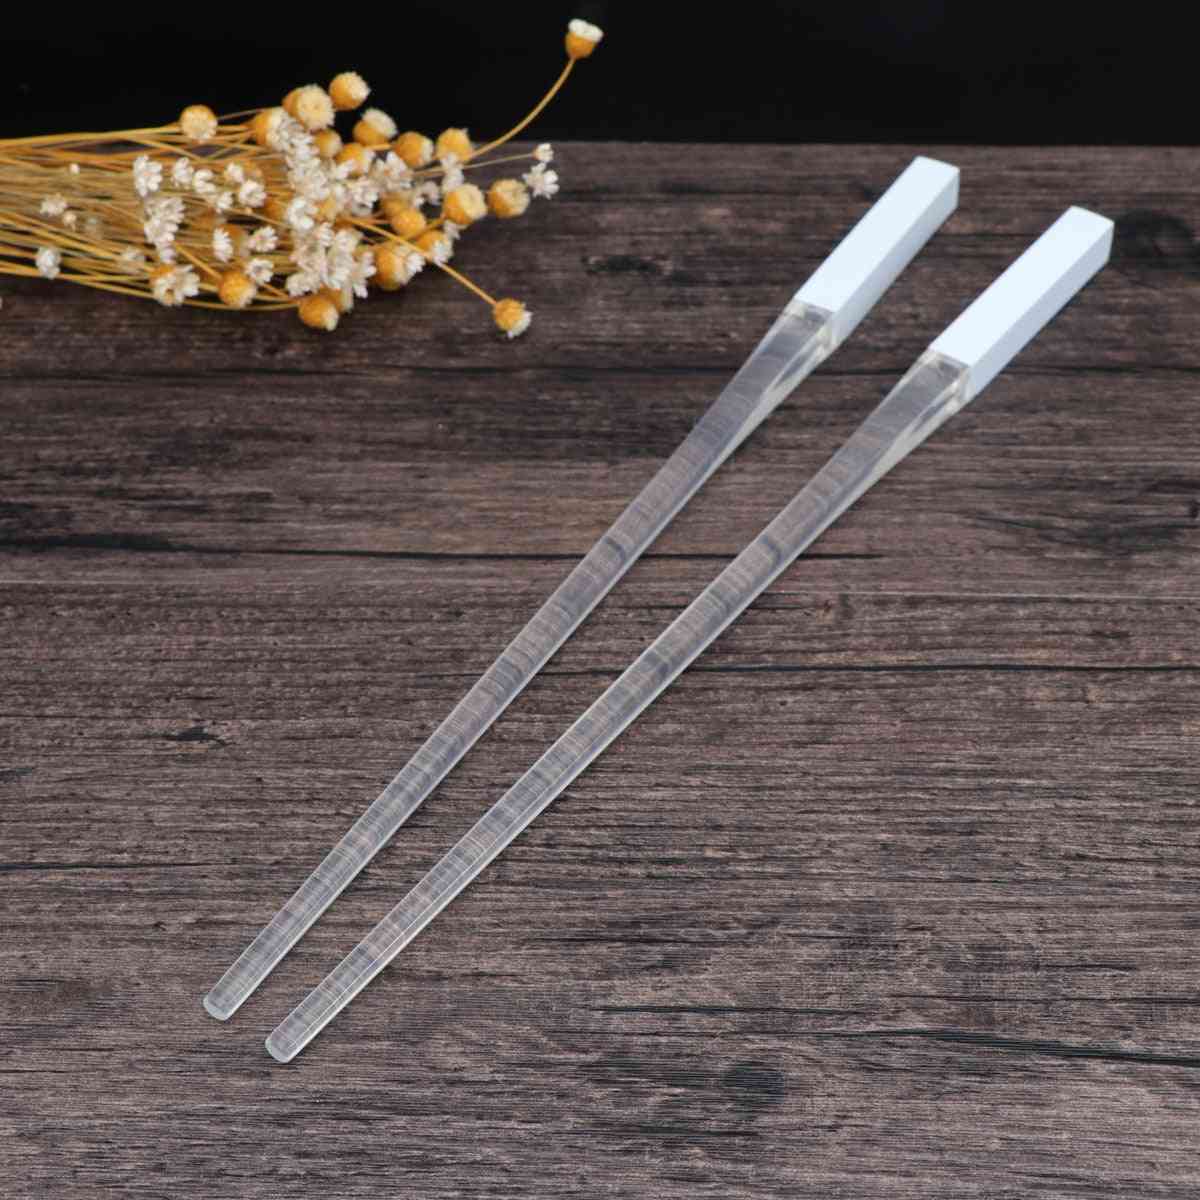 Led Chopsticks Light, Up Durable Lightweight